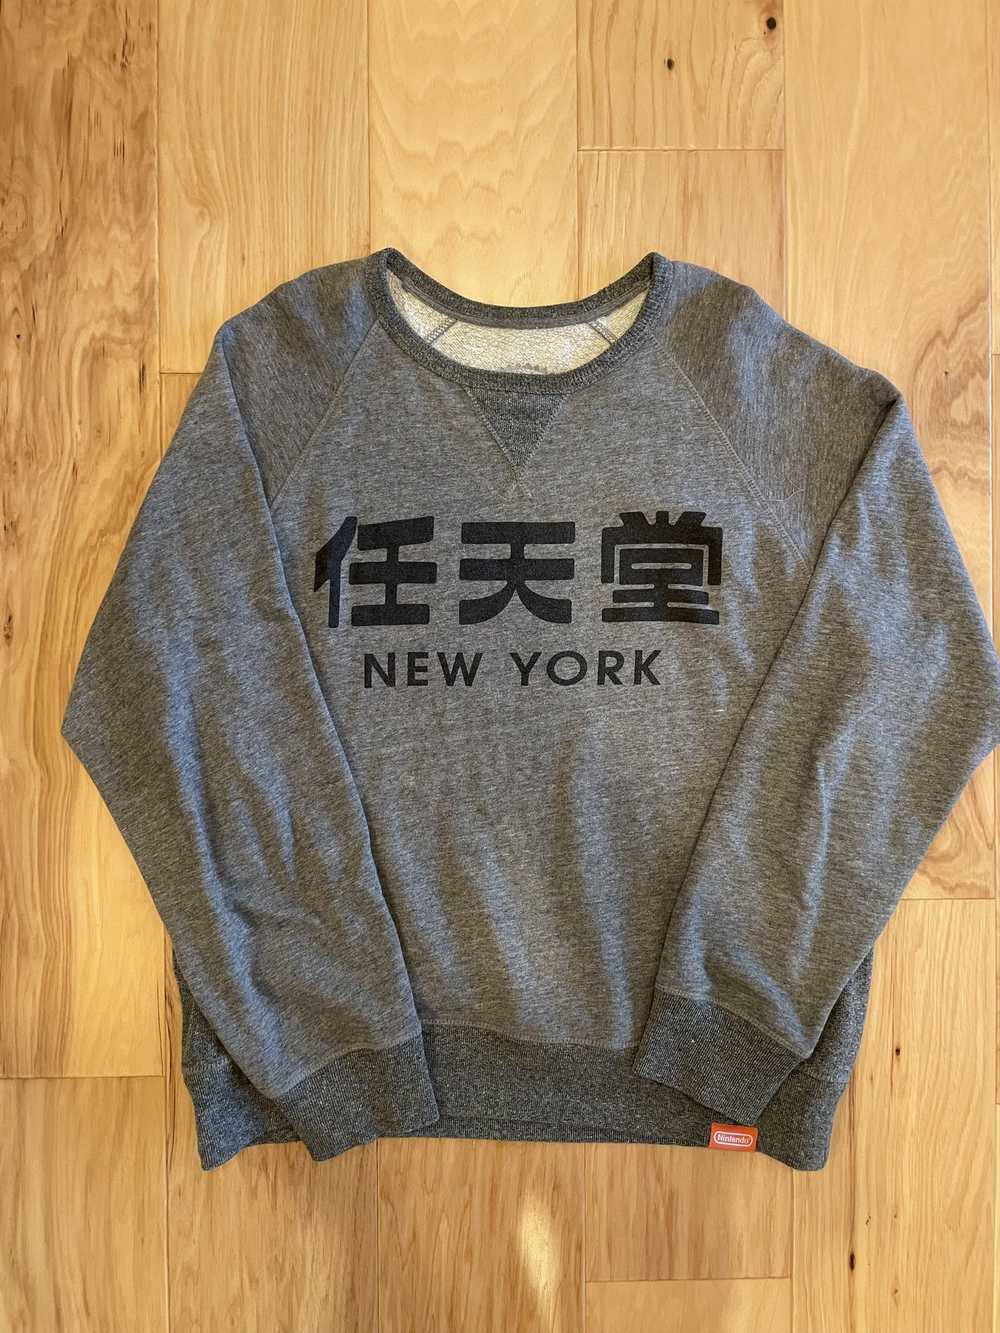 Nintendo Vintage Nintendo NYC Sweatshirt - Large - image 1